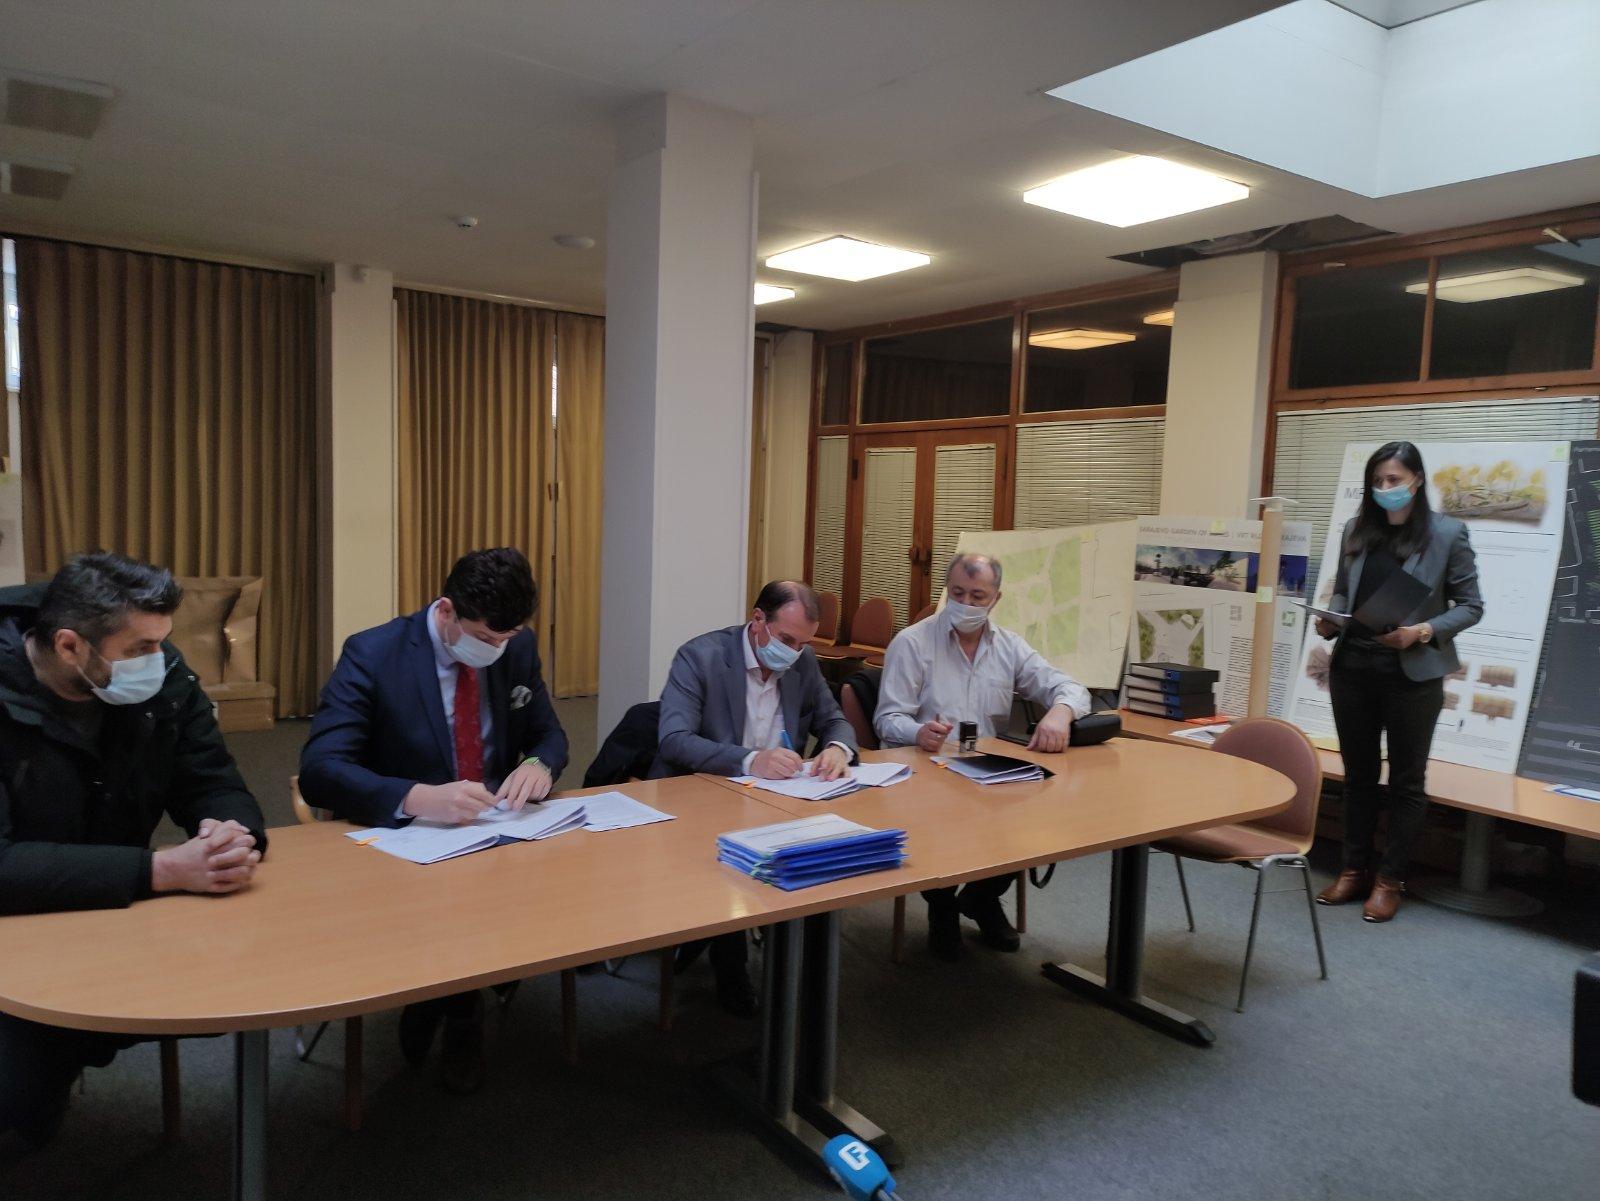 Potpisan ugovor za sanaciju krova upravne zgrade Memorijalnog centra u Srebrenici